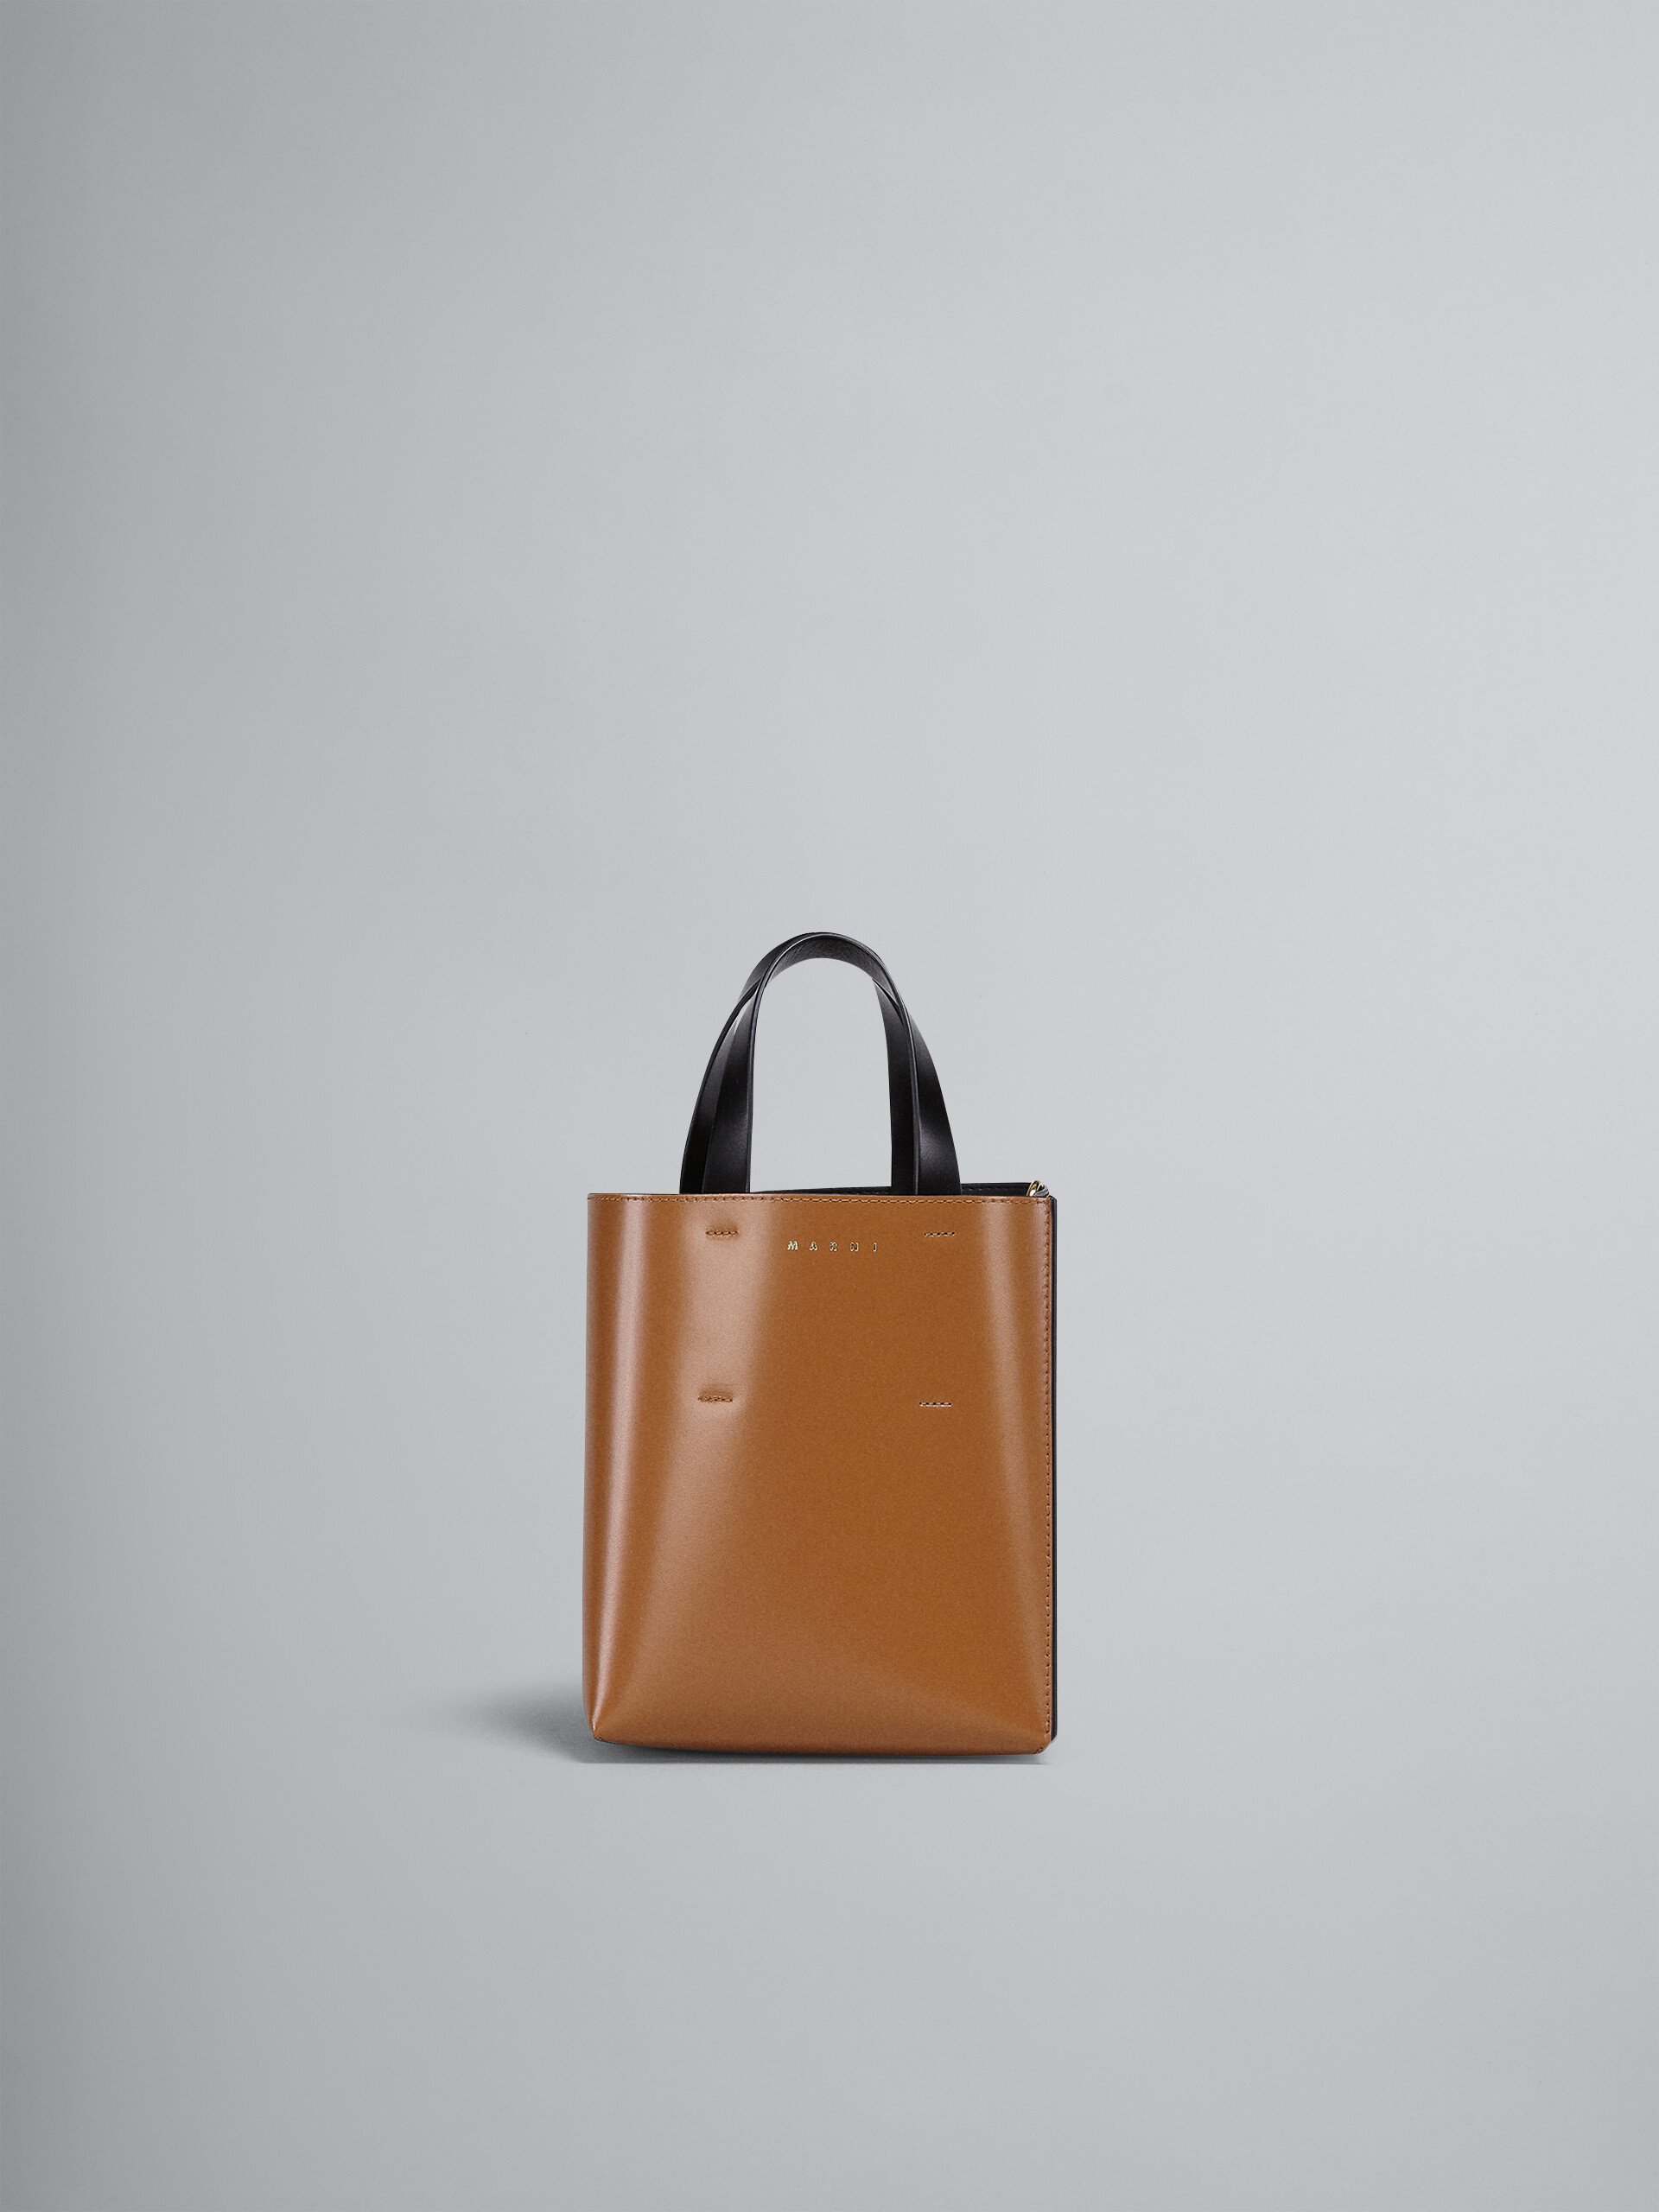 Museo Bag Mini in pelle nera e marrone - Borse shopping - Image 1